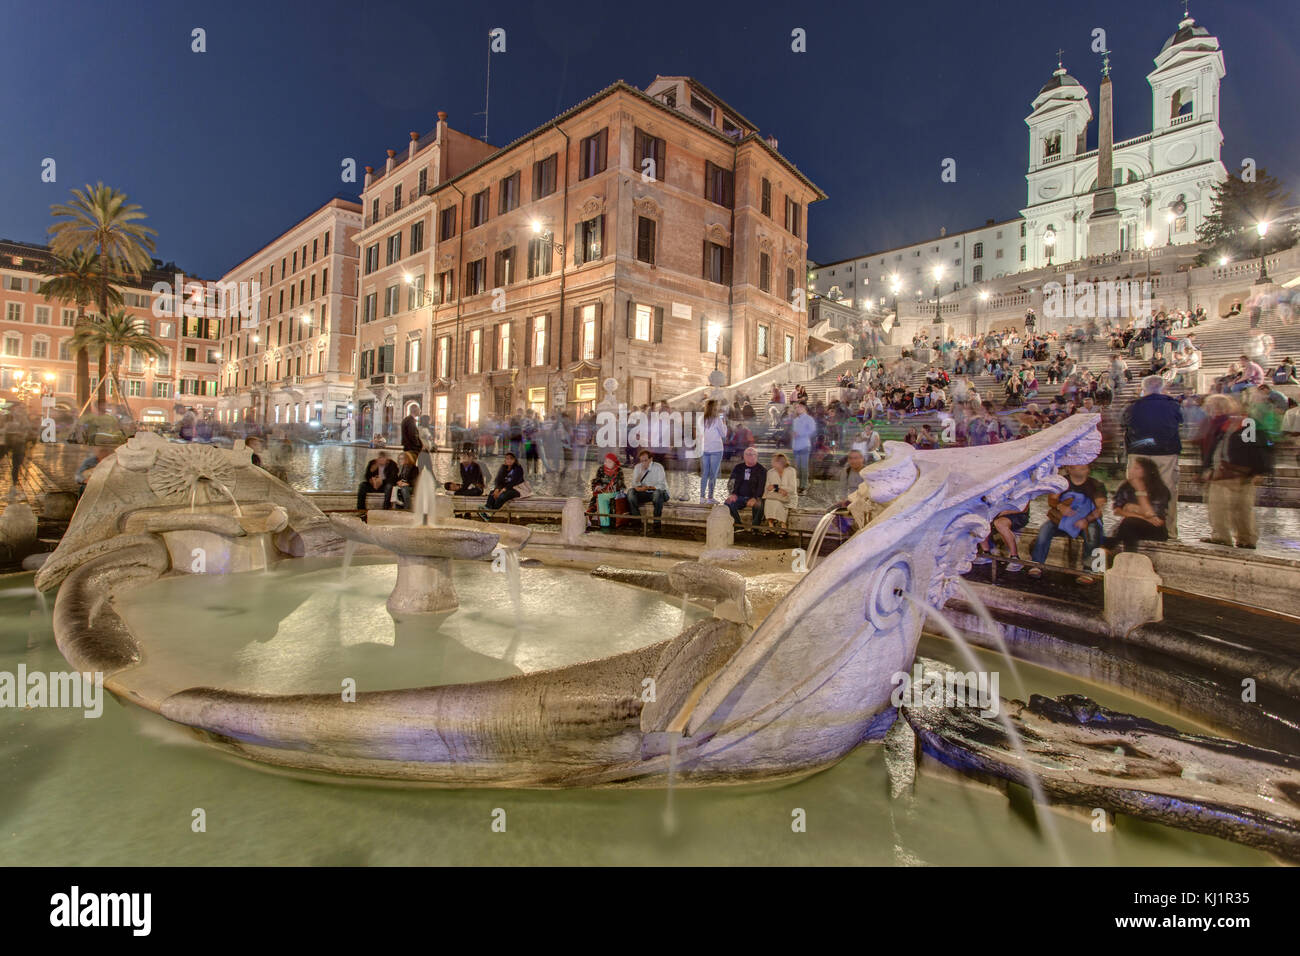 Spanische Treppe, Rom - Piazza di Spagna Roma Stockfoto